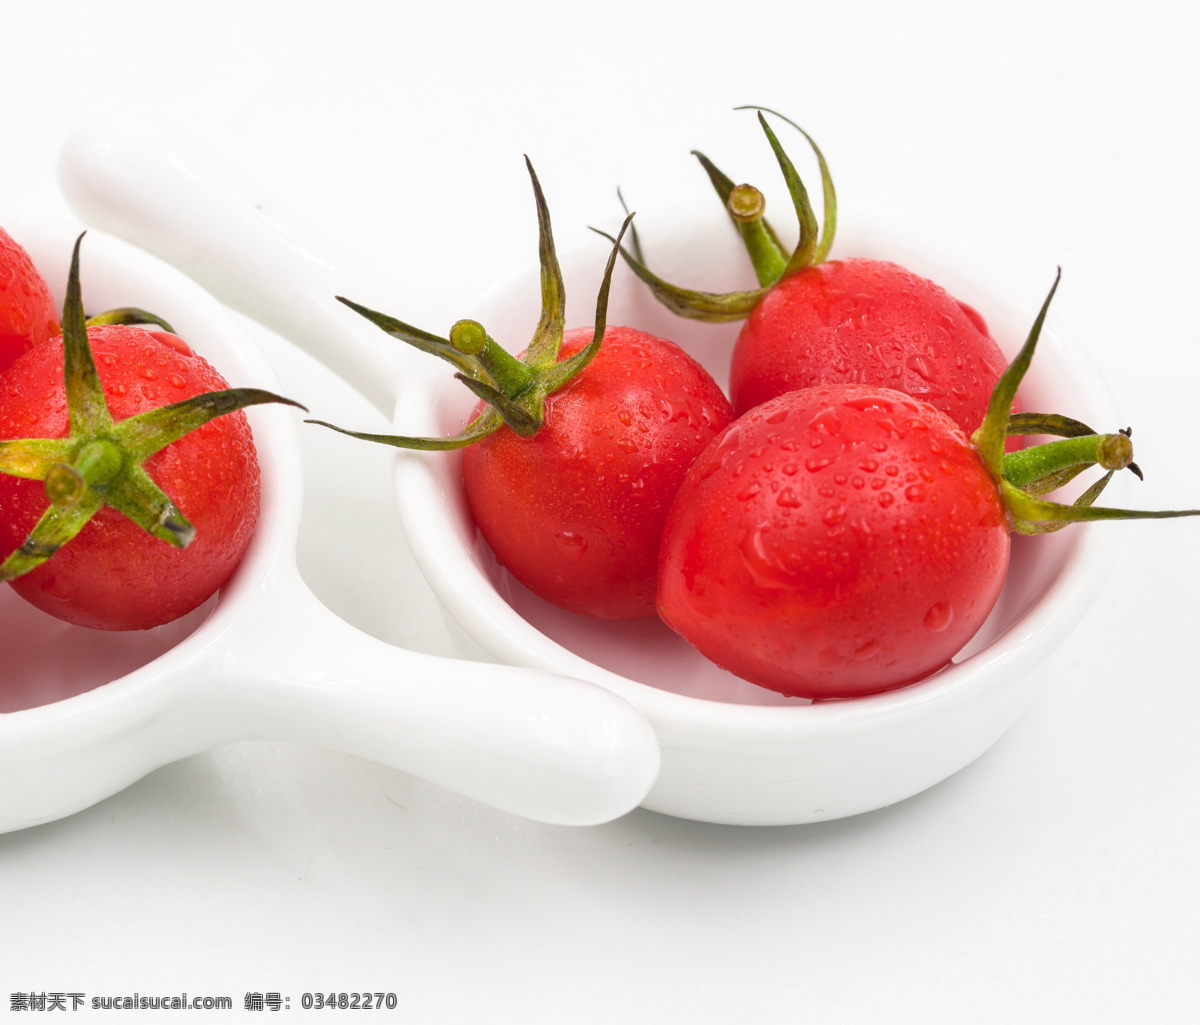 圣女果 西红柿 樱桃西红柿 樱桃番茄 小柿子 蔬菜 食物 食材 餐饮美食 食物原料